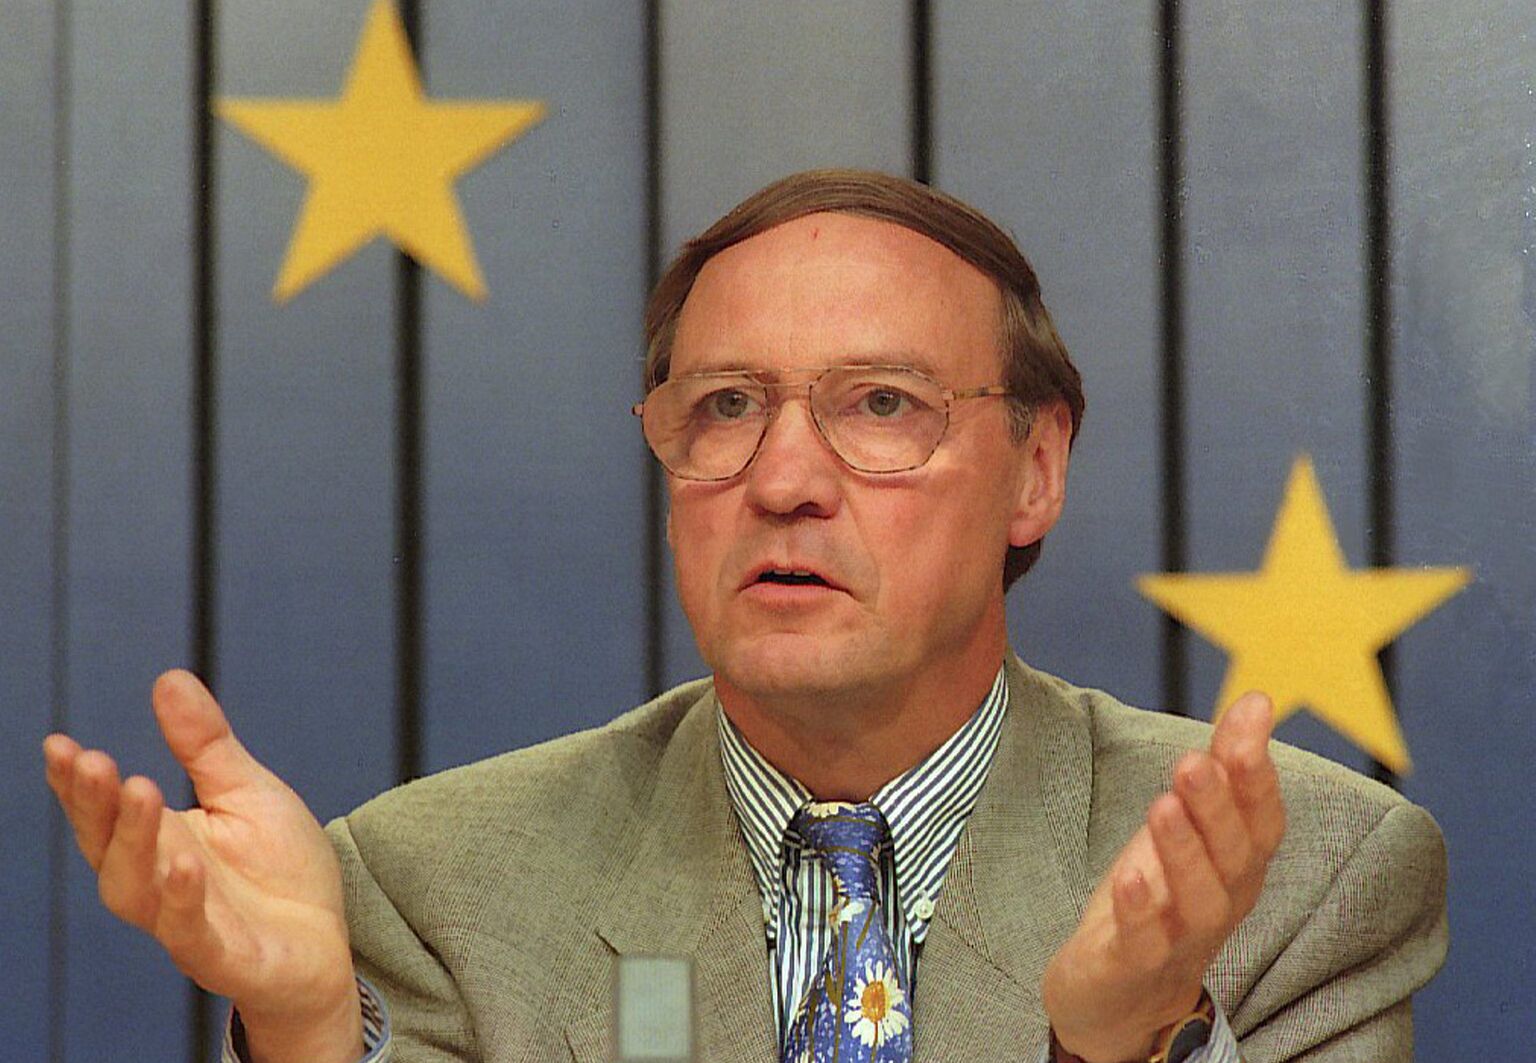 De Vlaamse sociaaldemocraat Karel Van Miert (1942-2009) was de langst dienstdoende eurocommissaris voor België en was onder meer bevoegd voor mededinging en consumentenbescherming. Hier is Europees commissaris Van Miert aan het woord tijdens een persconferentie in juni 1995.